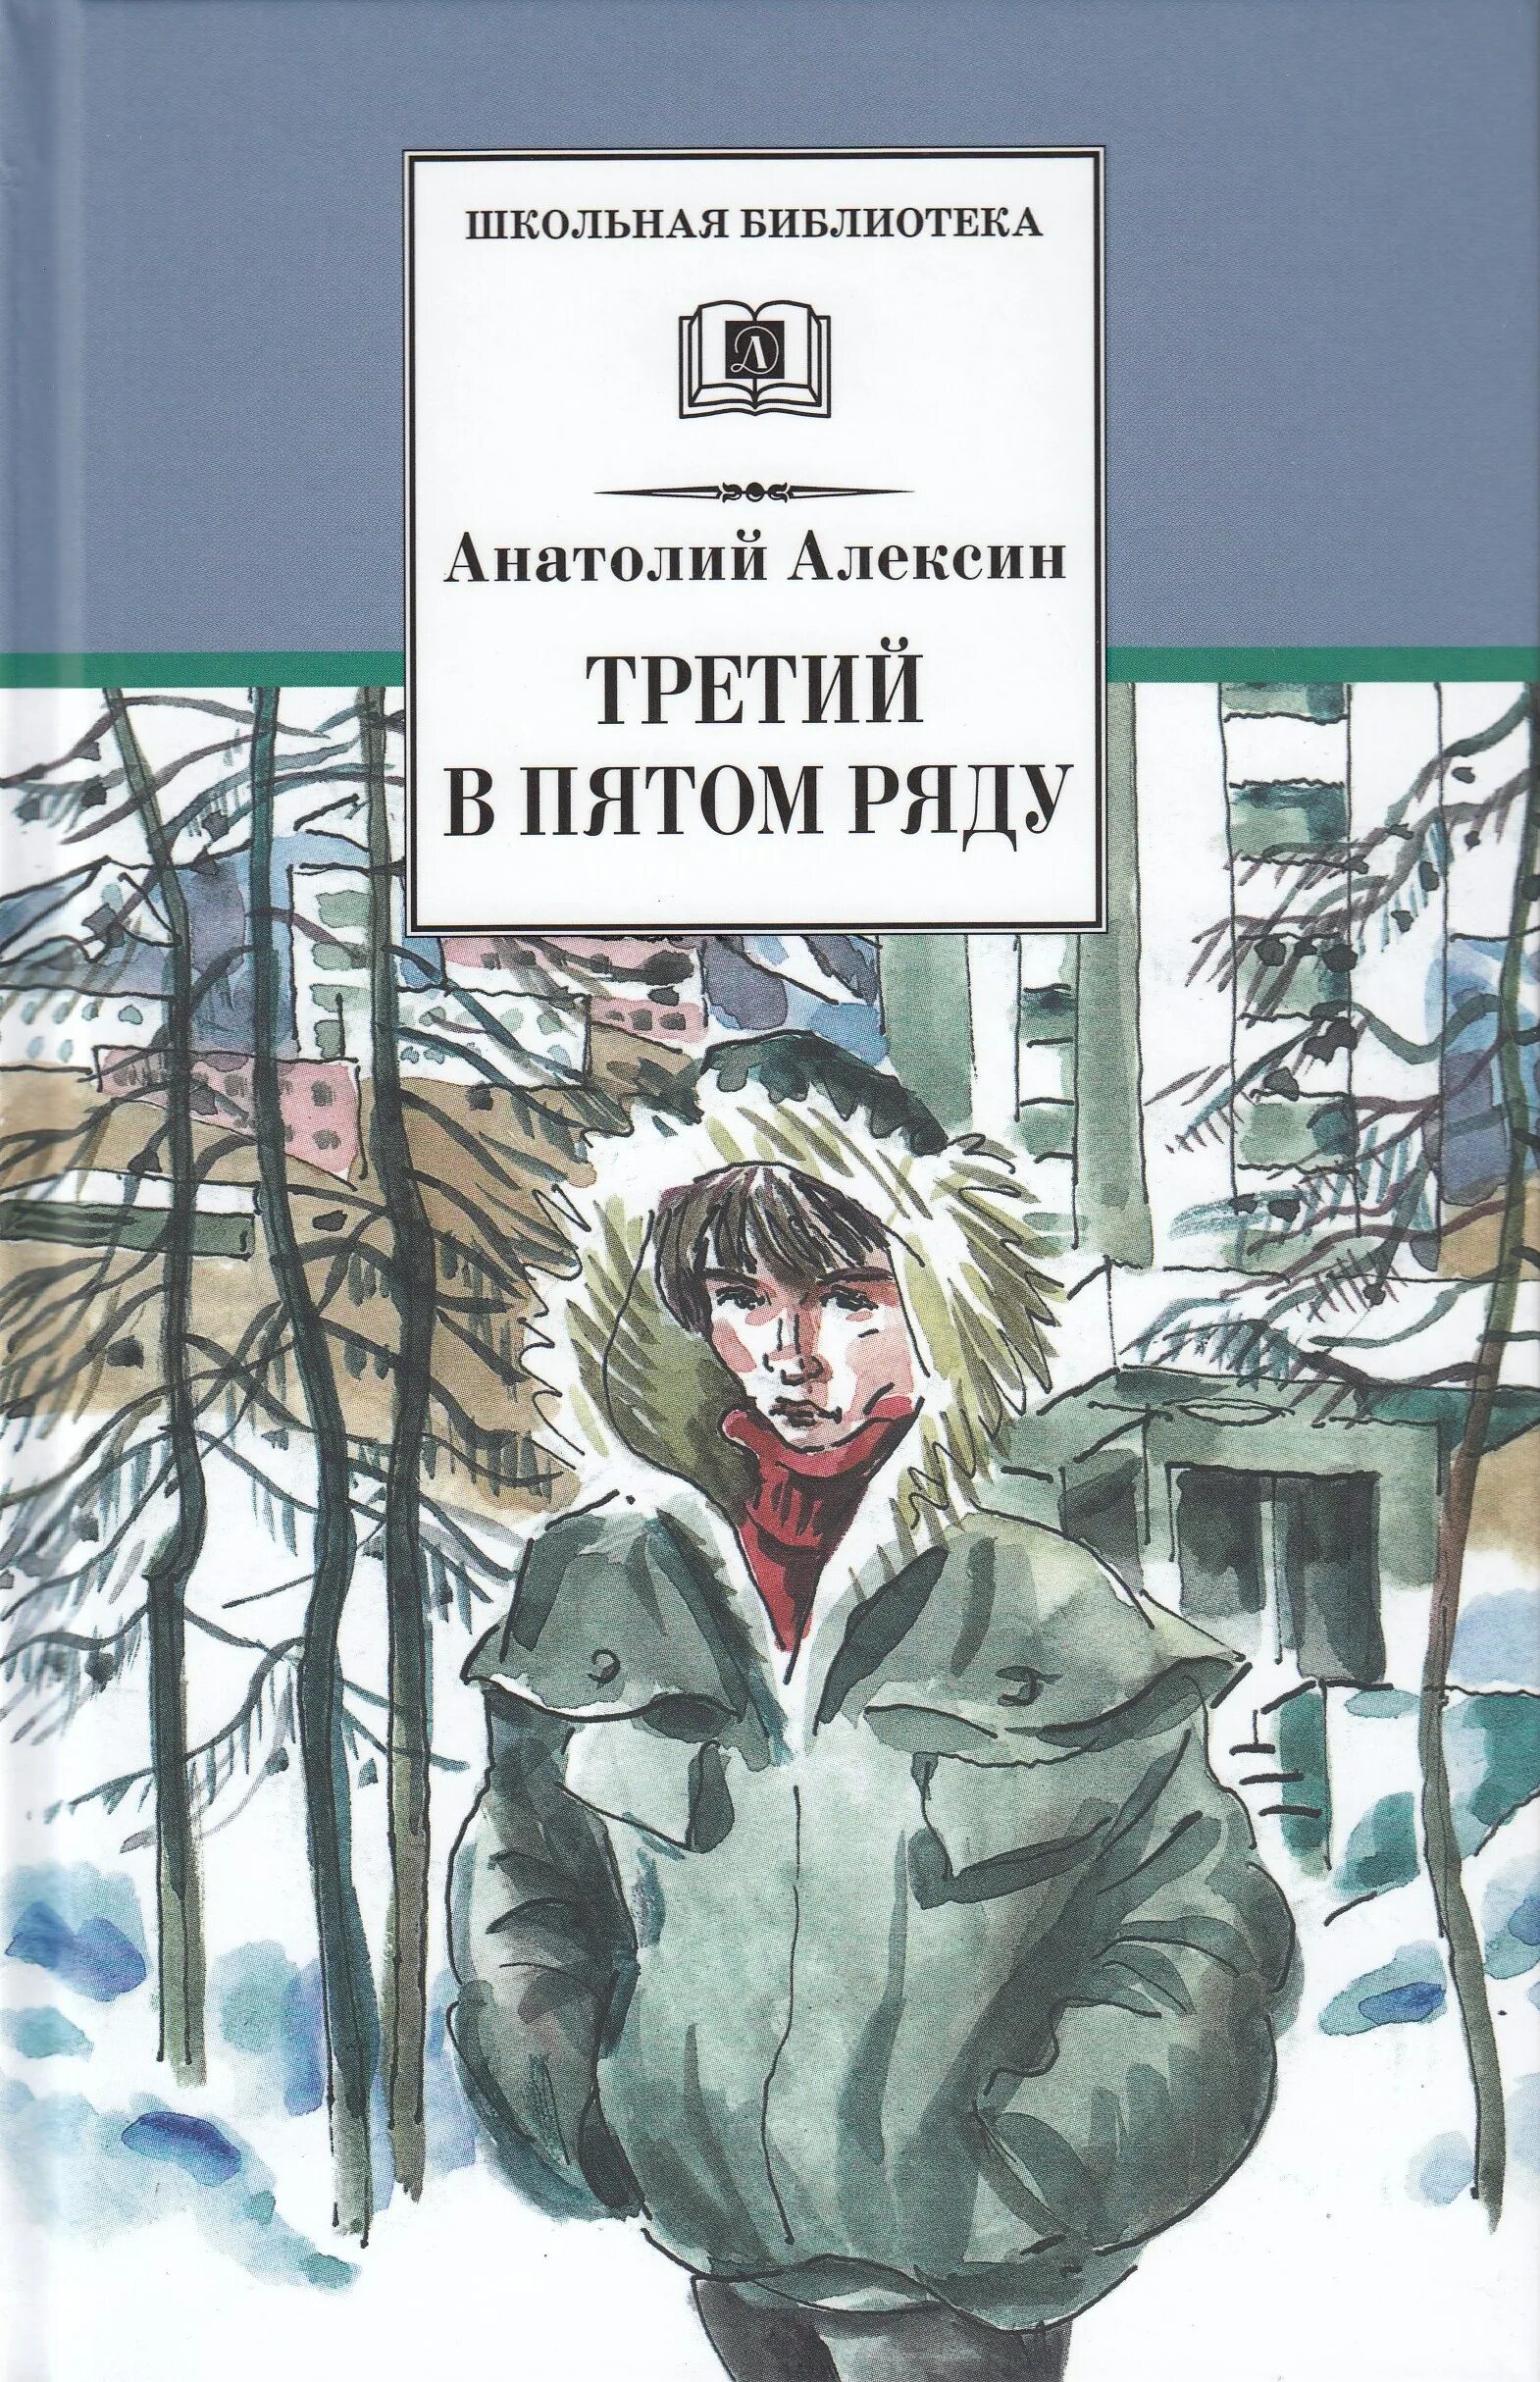 Иллюстрации к книге Алексина "третий в пятом ряду".